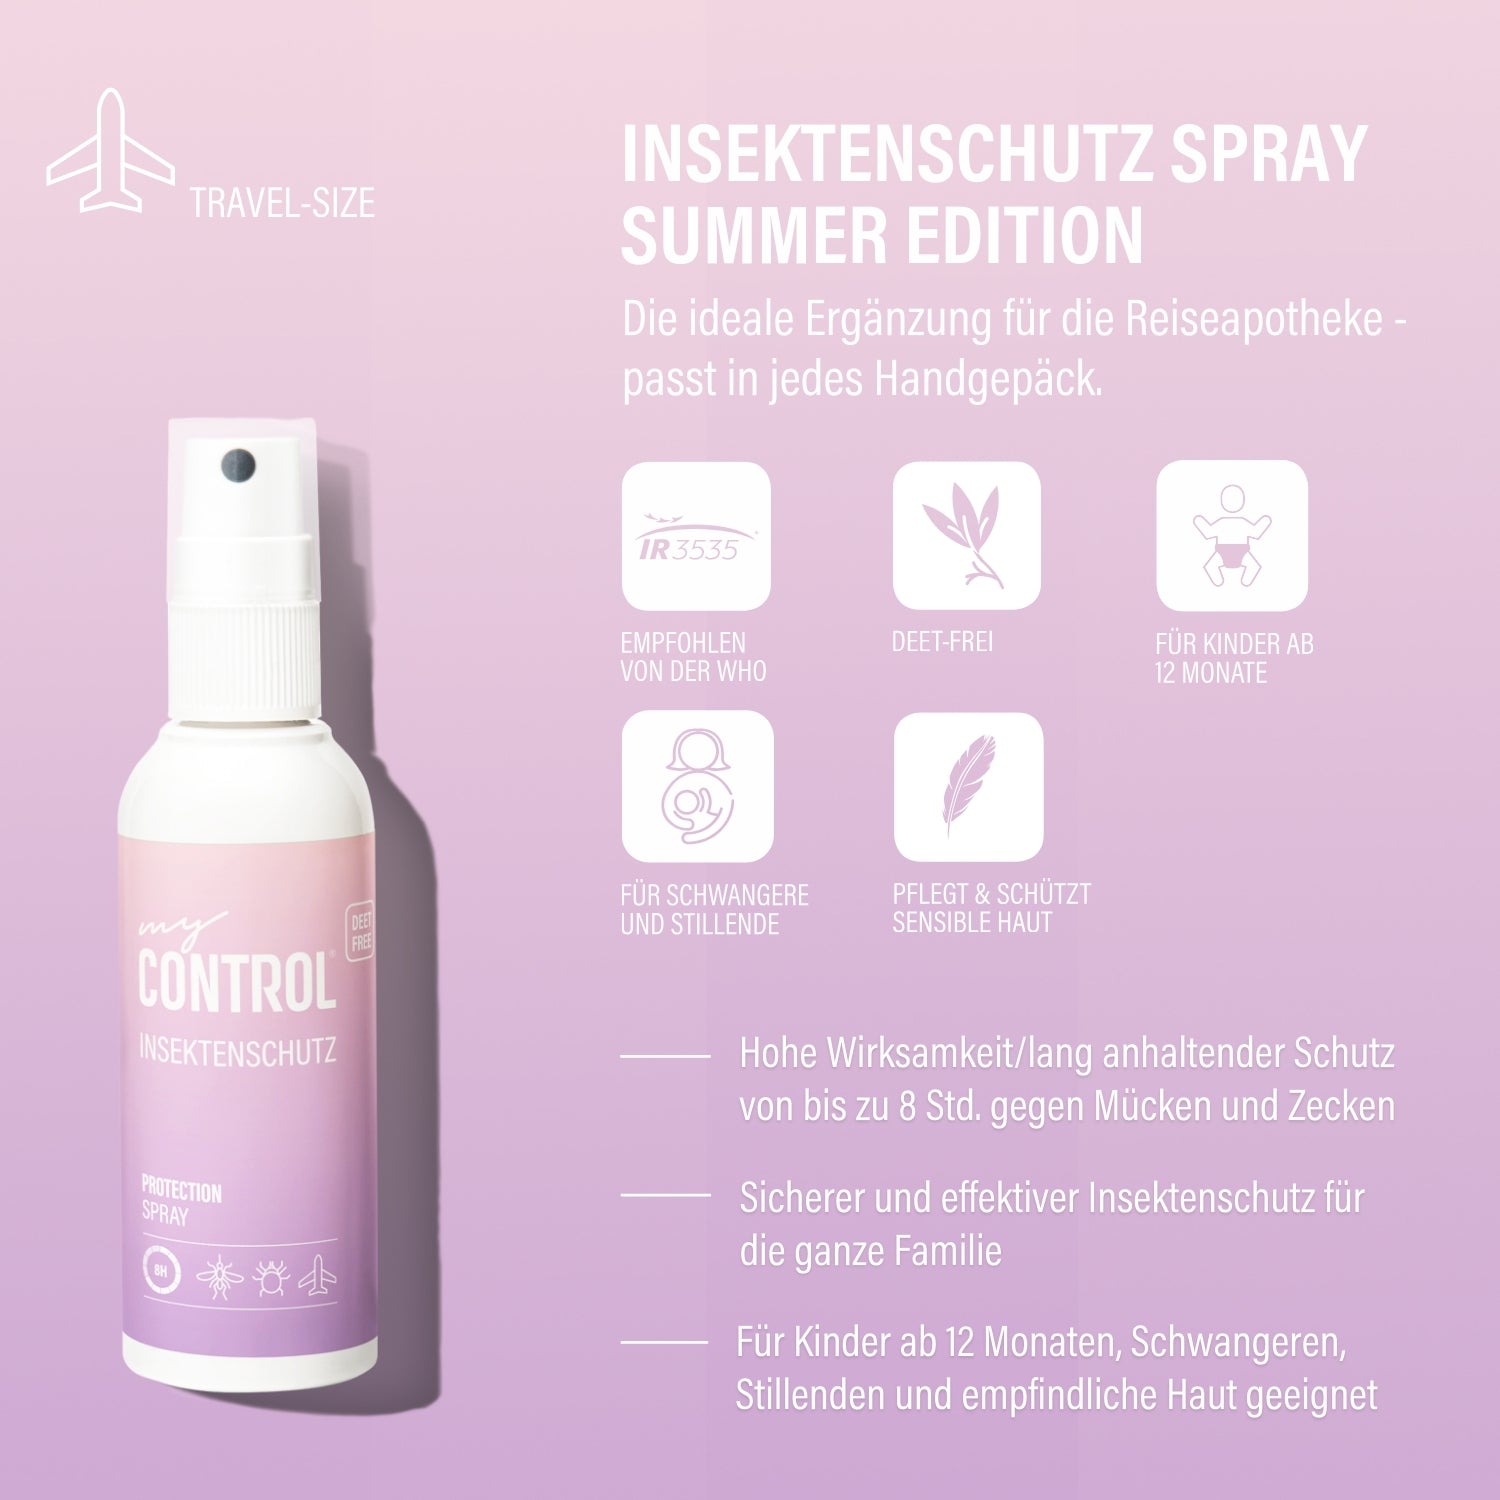 Insektenschutz Spray Summer Edition